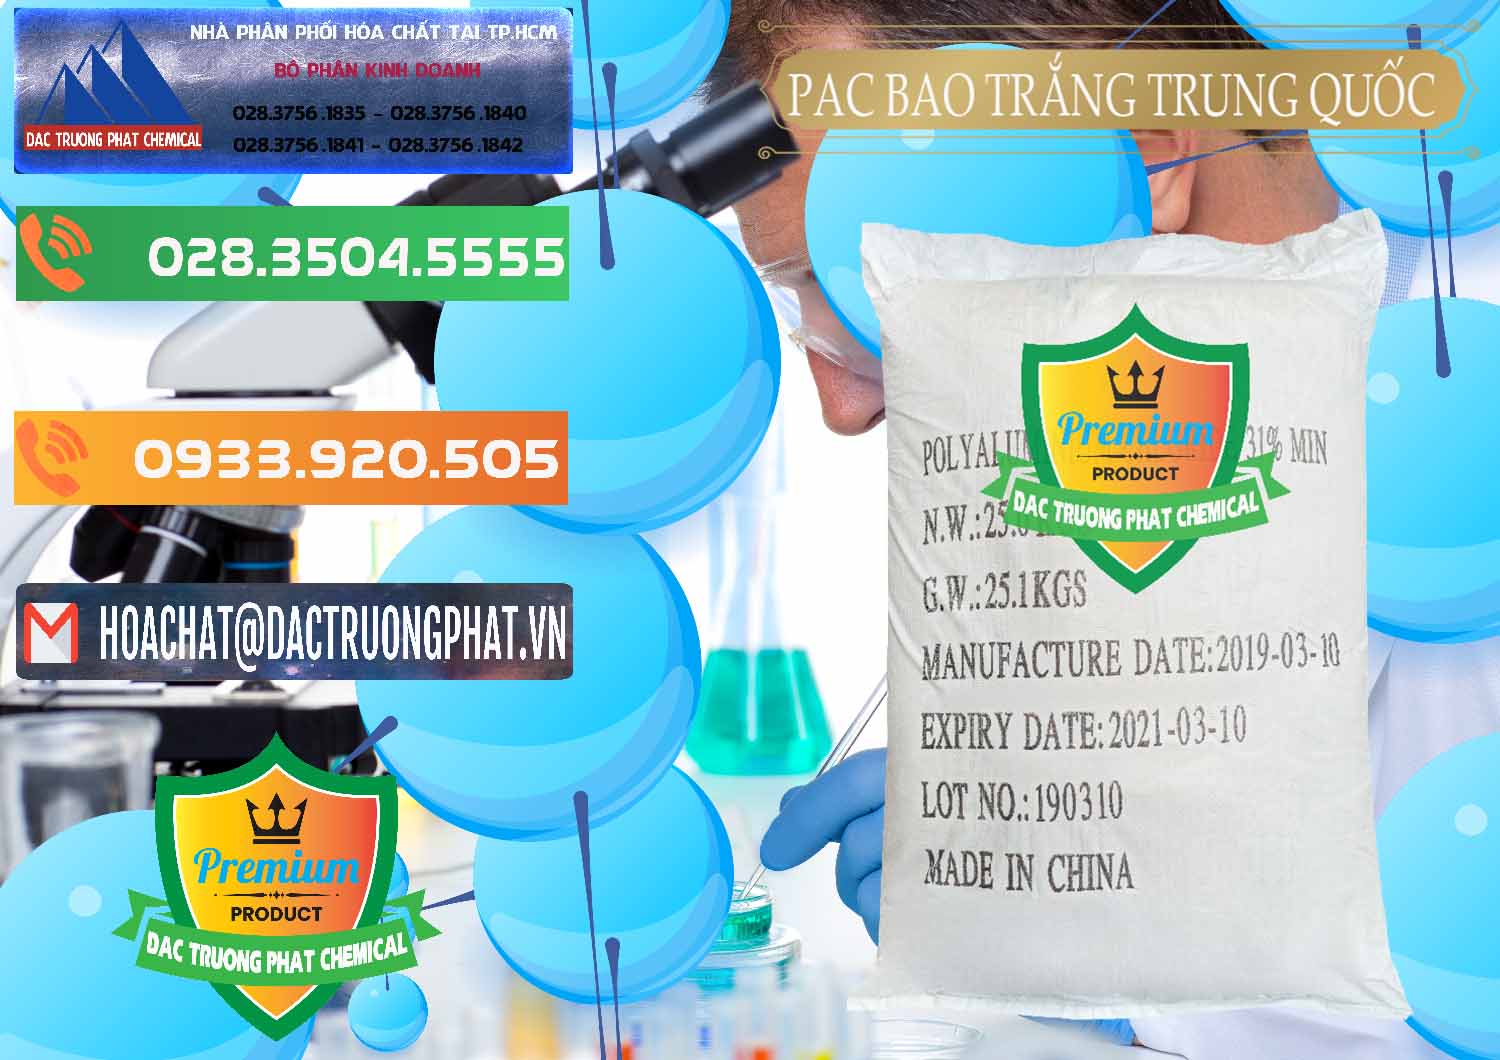 Công ty kinh doanh ( bán ) PAC - Polyaluminium Chloride Bao Trắng Trung Quốc China - 0108 - Phân phối & cung cấp hóa chất tại TP.HCM - hoachatxulynuoc.com.vn